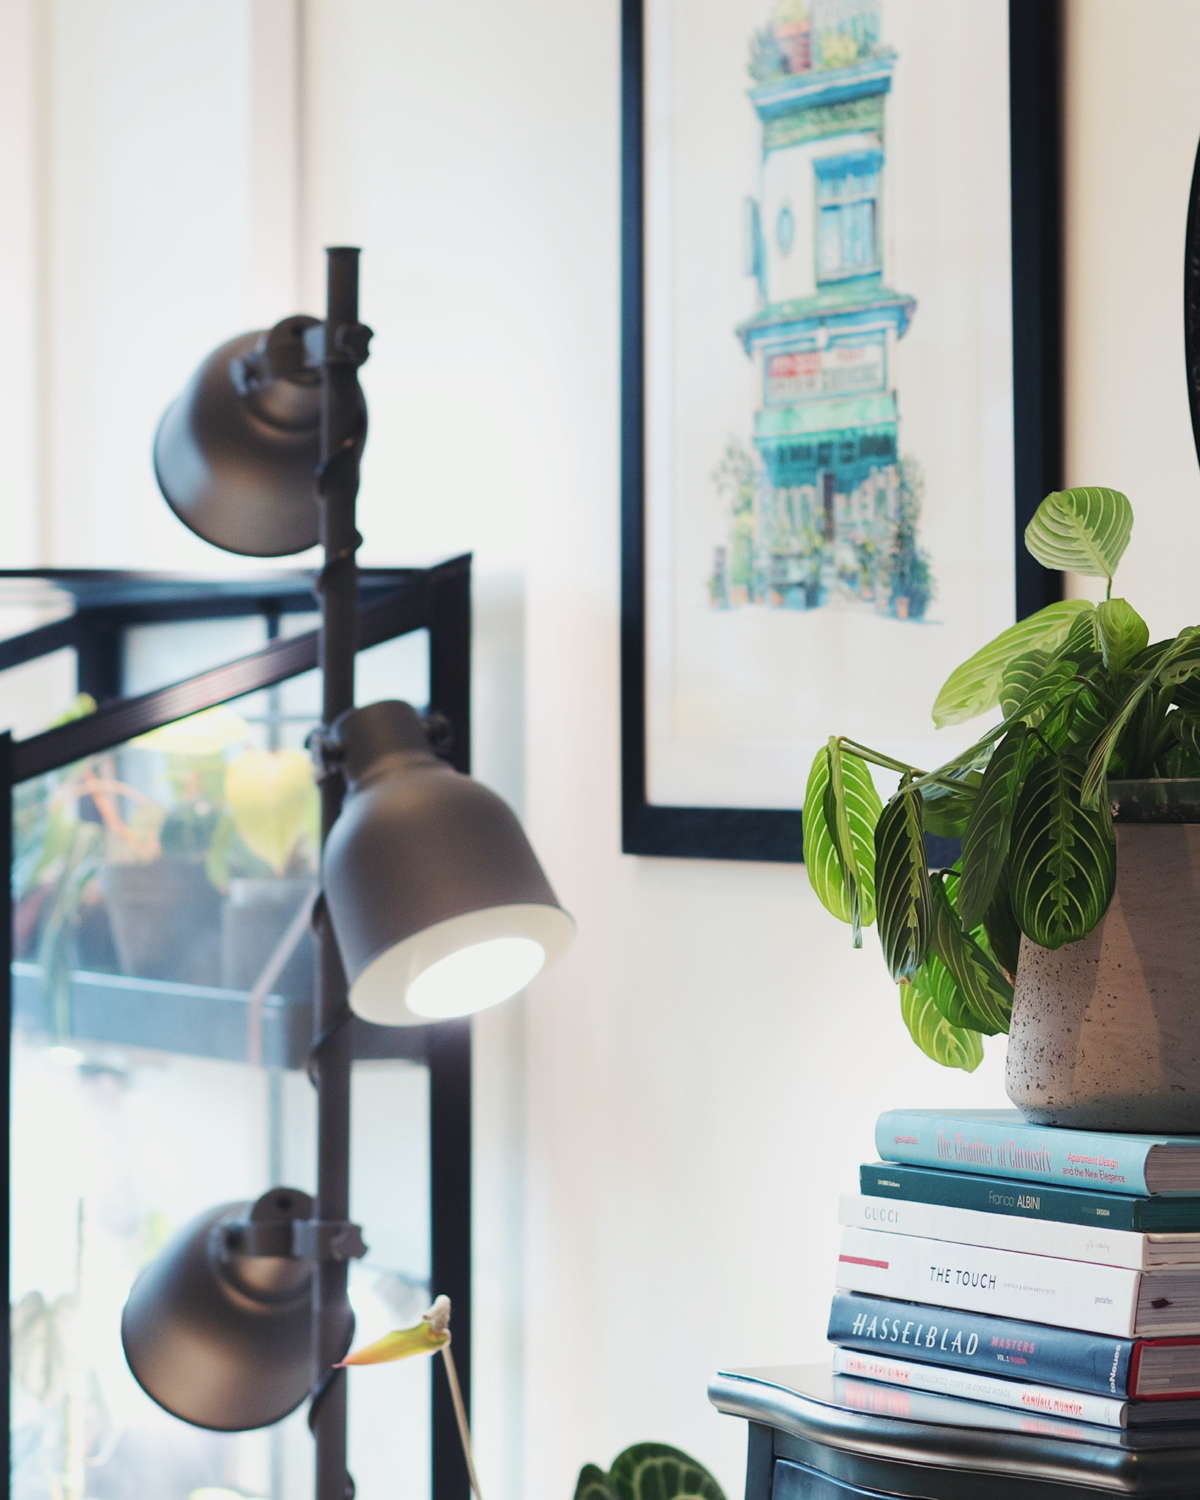 Best Grow Lights for Indoor Plants